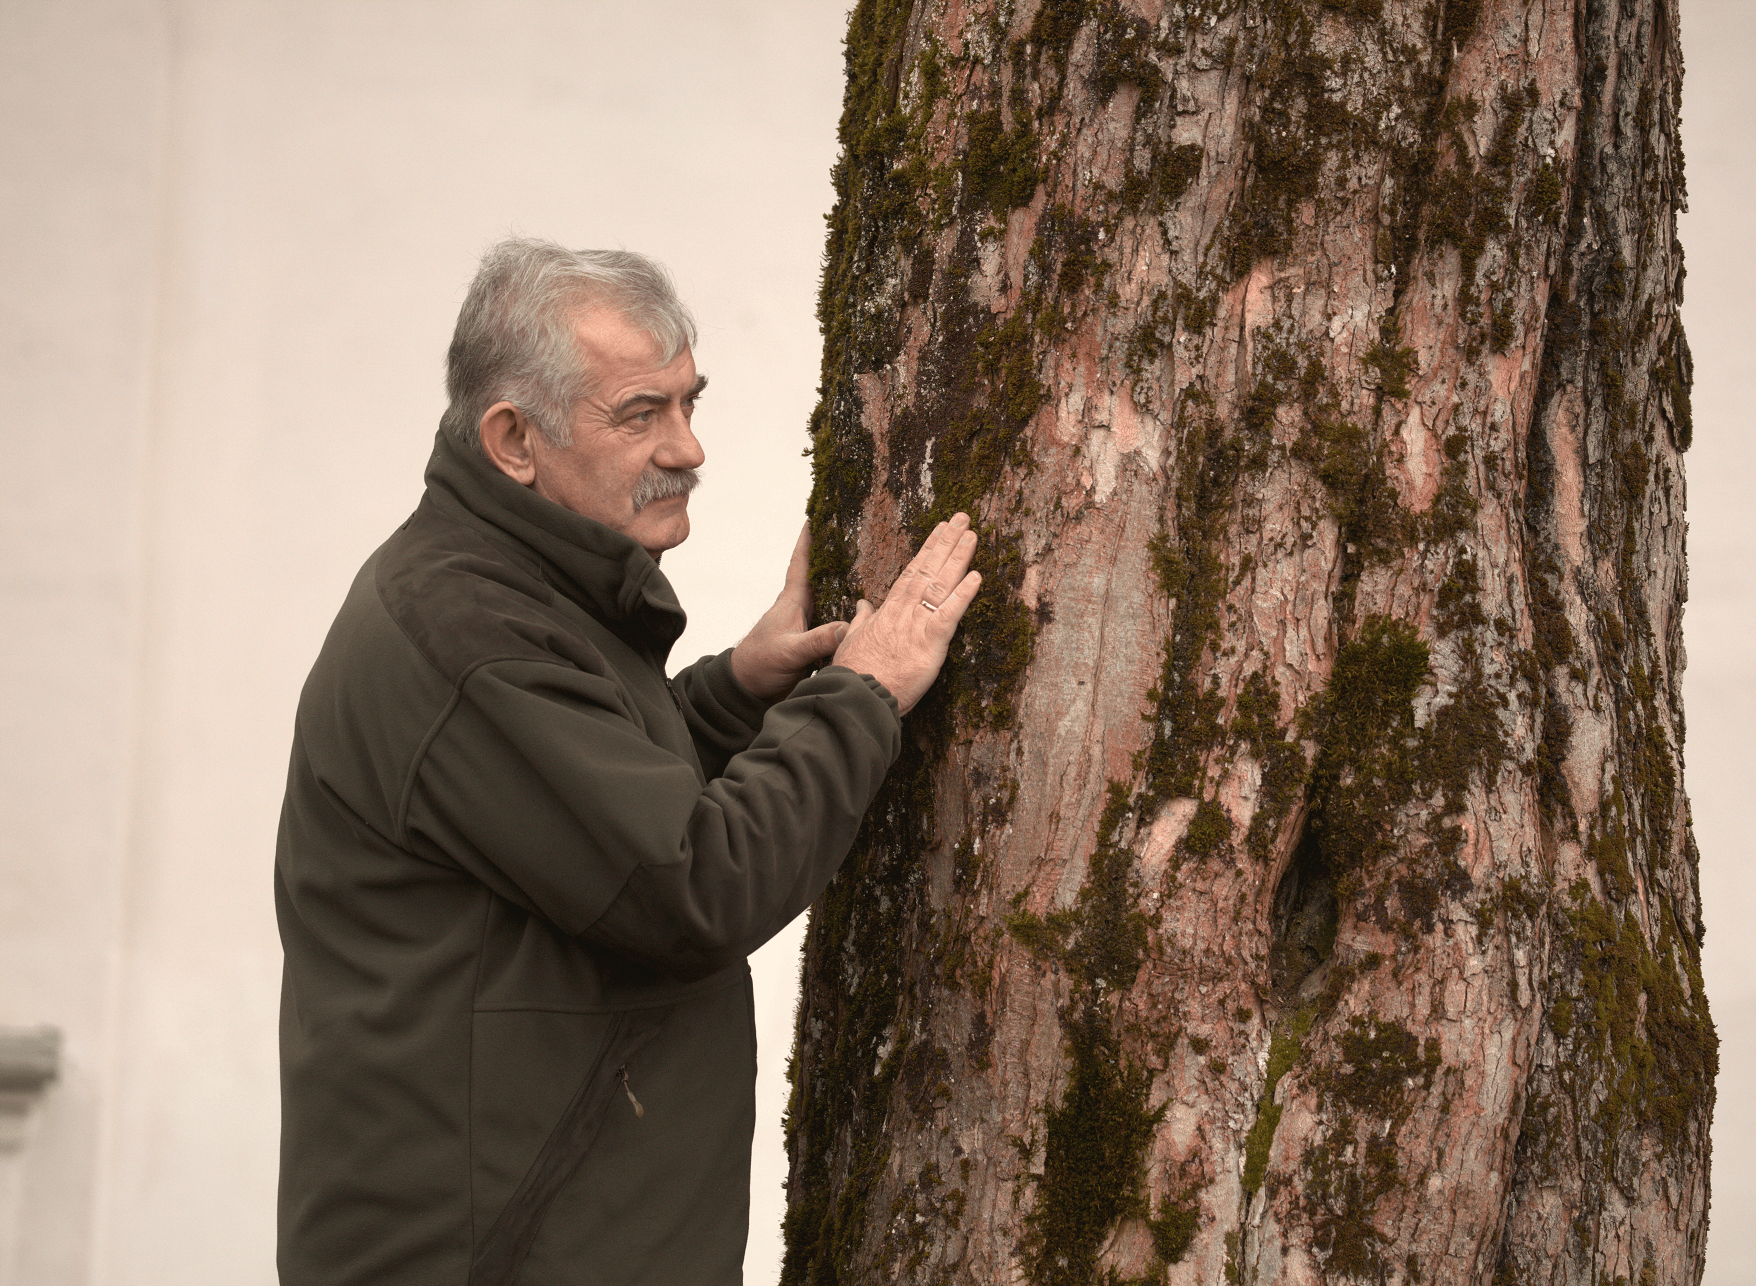 Kazimierz – a forester from the Bieszczady Mountains